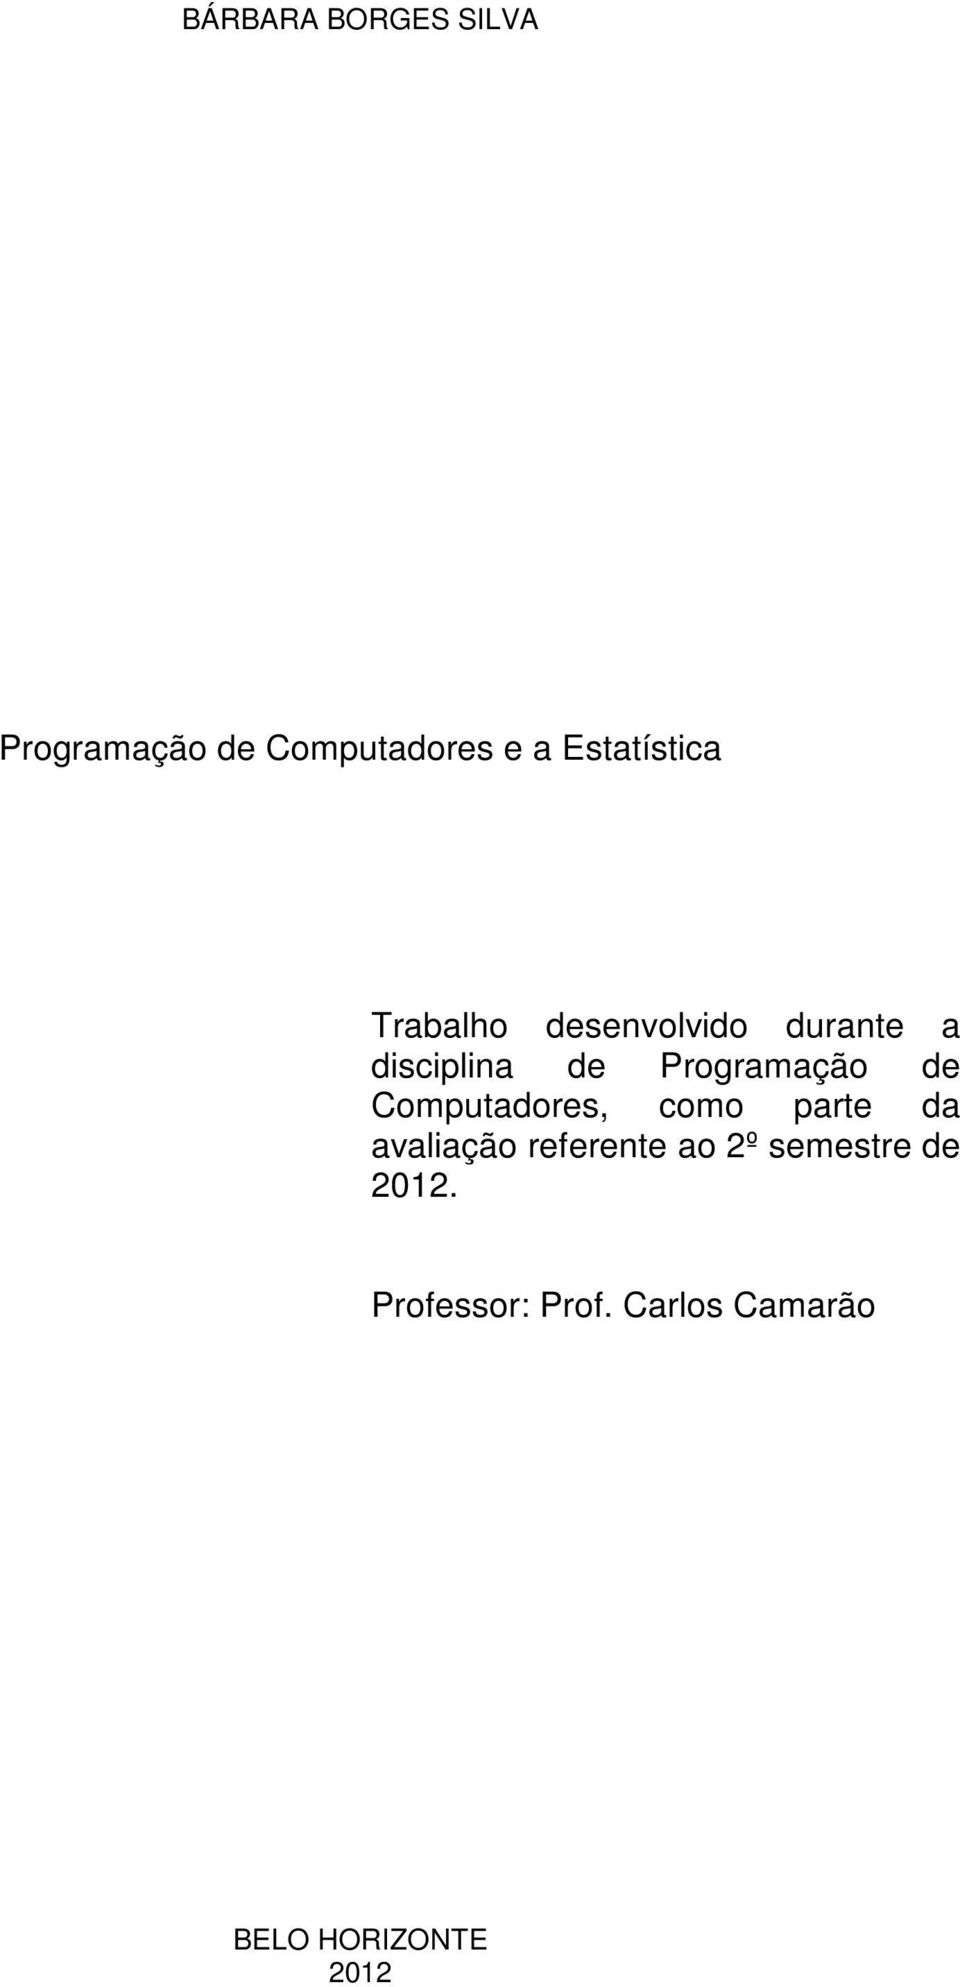 Programação de Computadores, como parte da avaliação referente